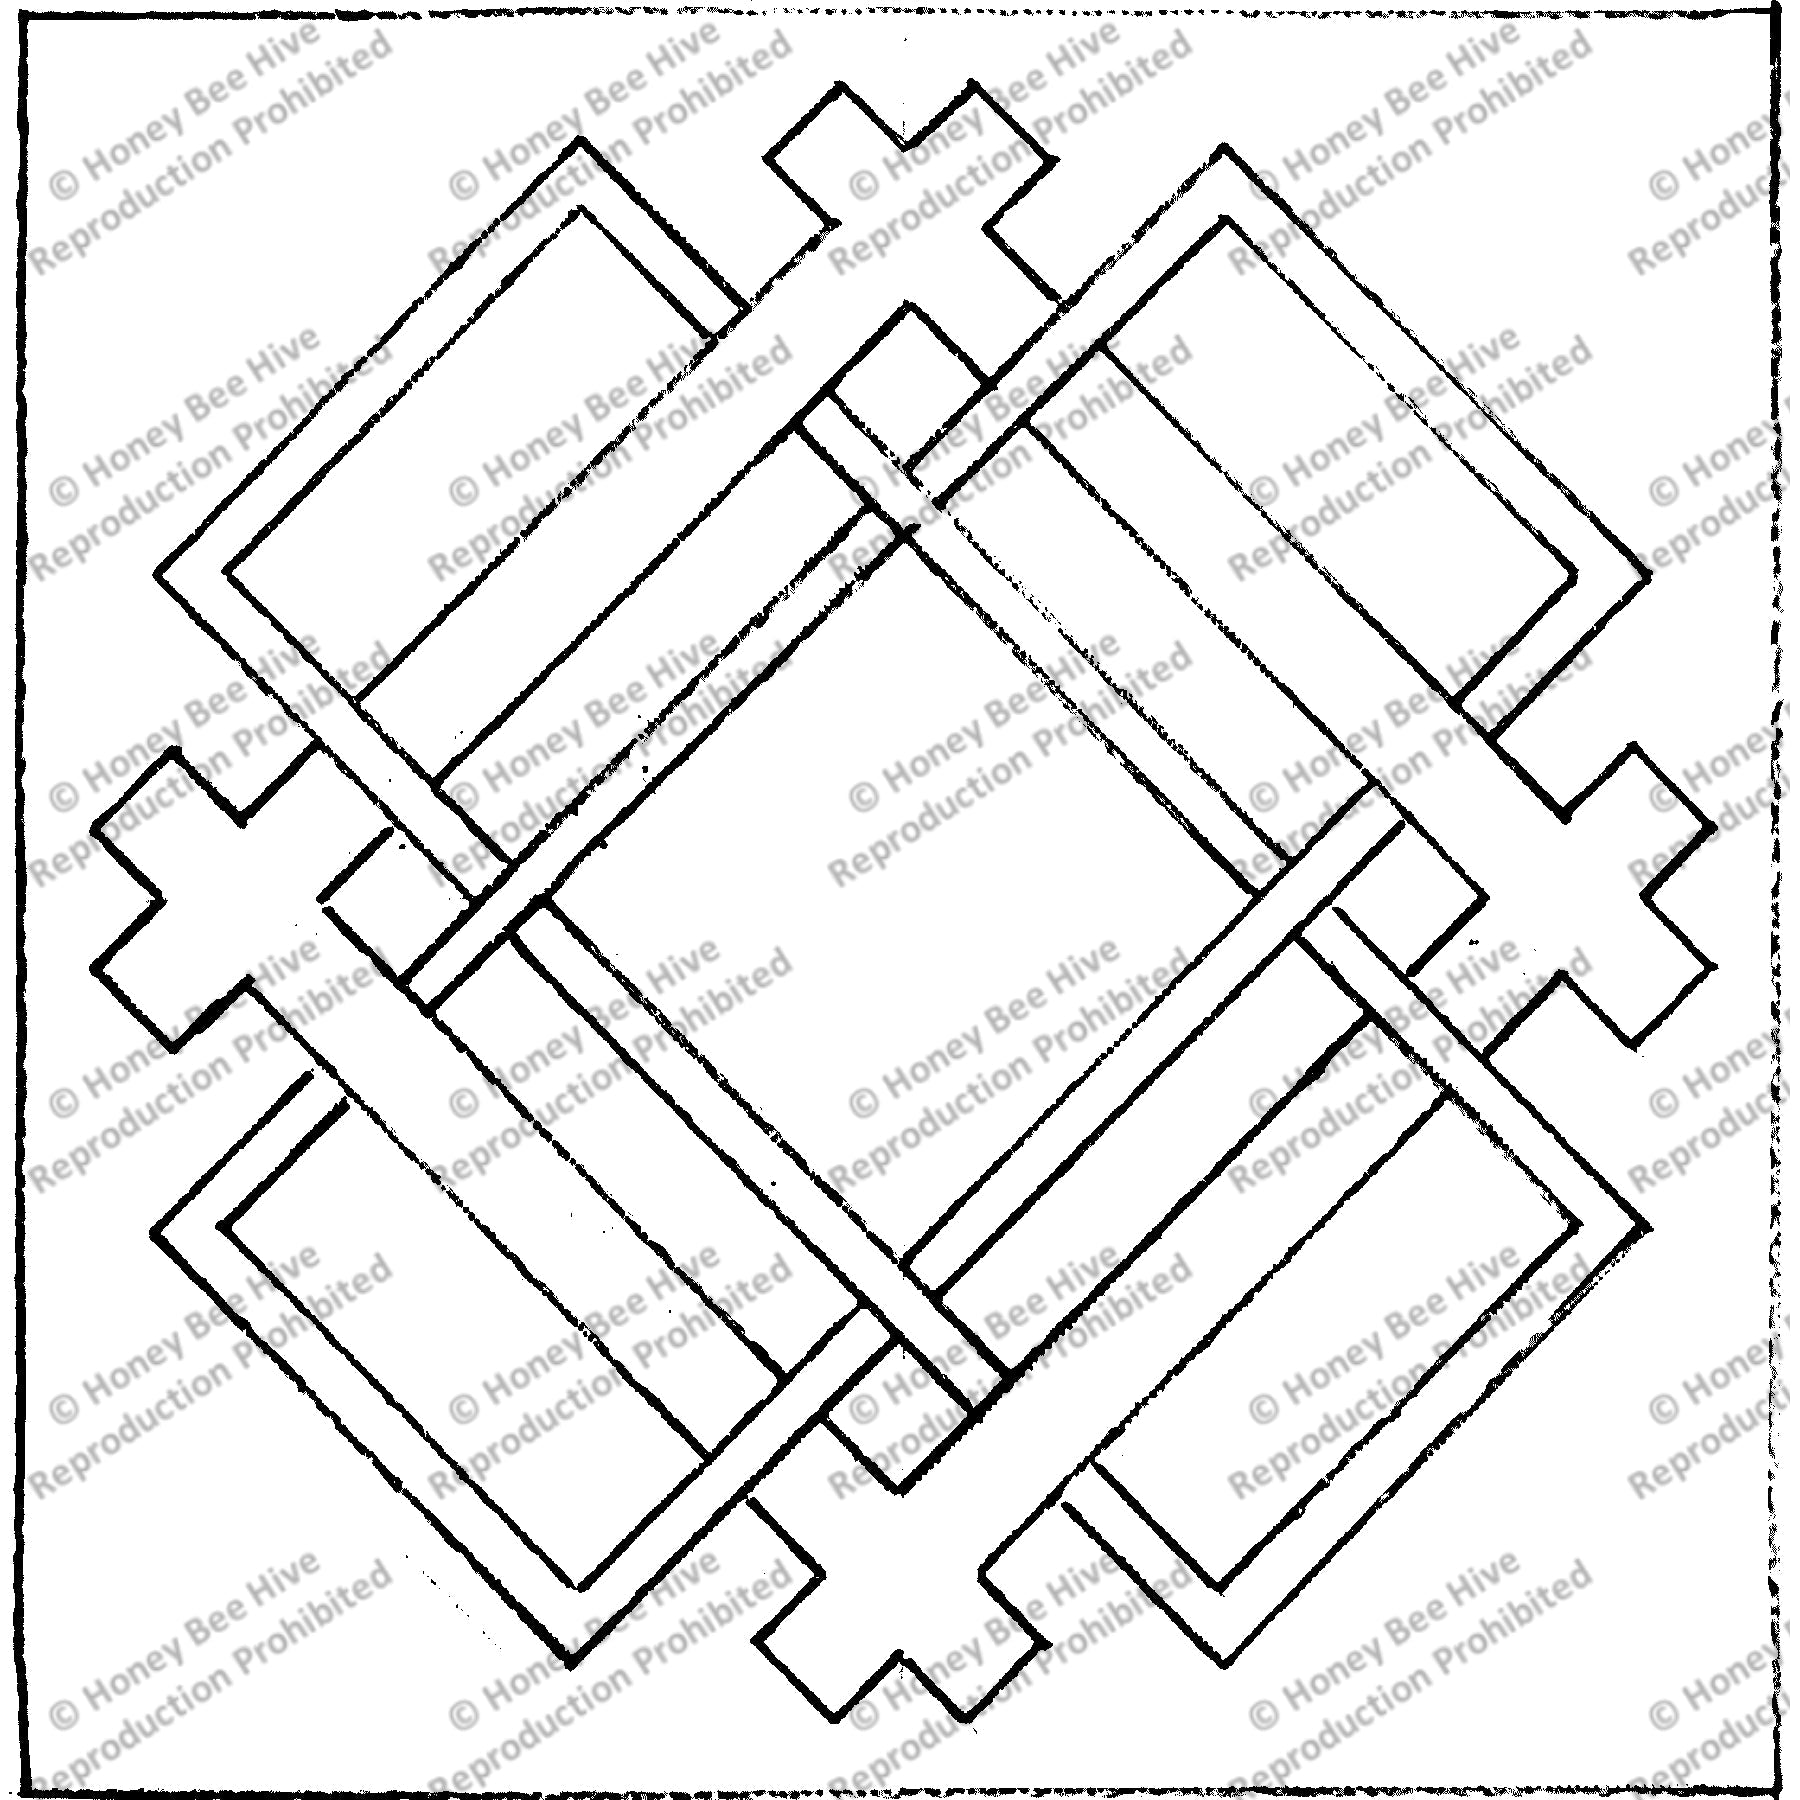 Thomasjon, rug hooking pattern